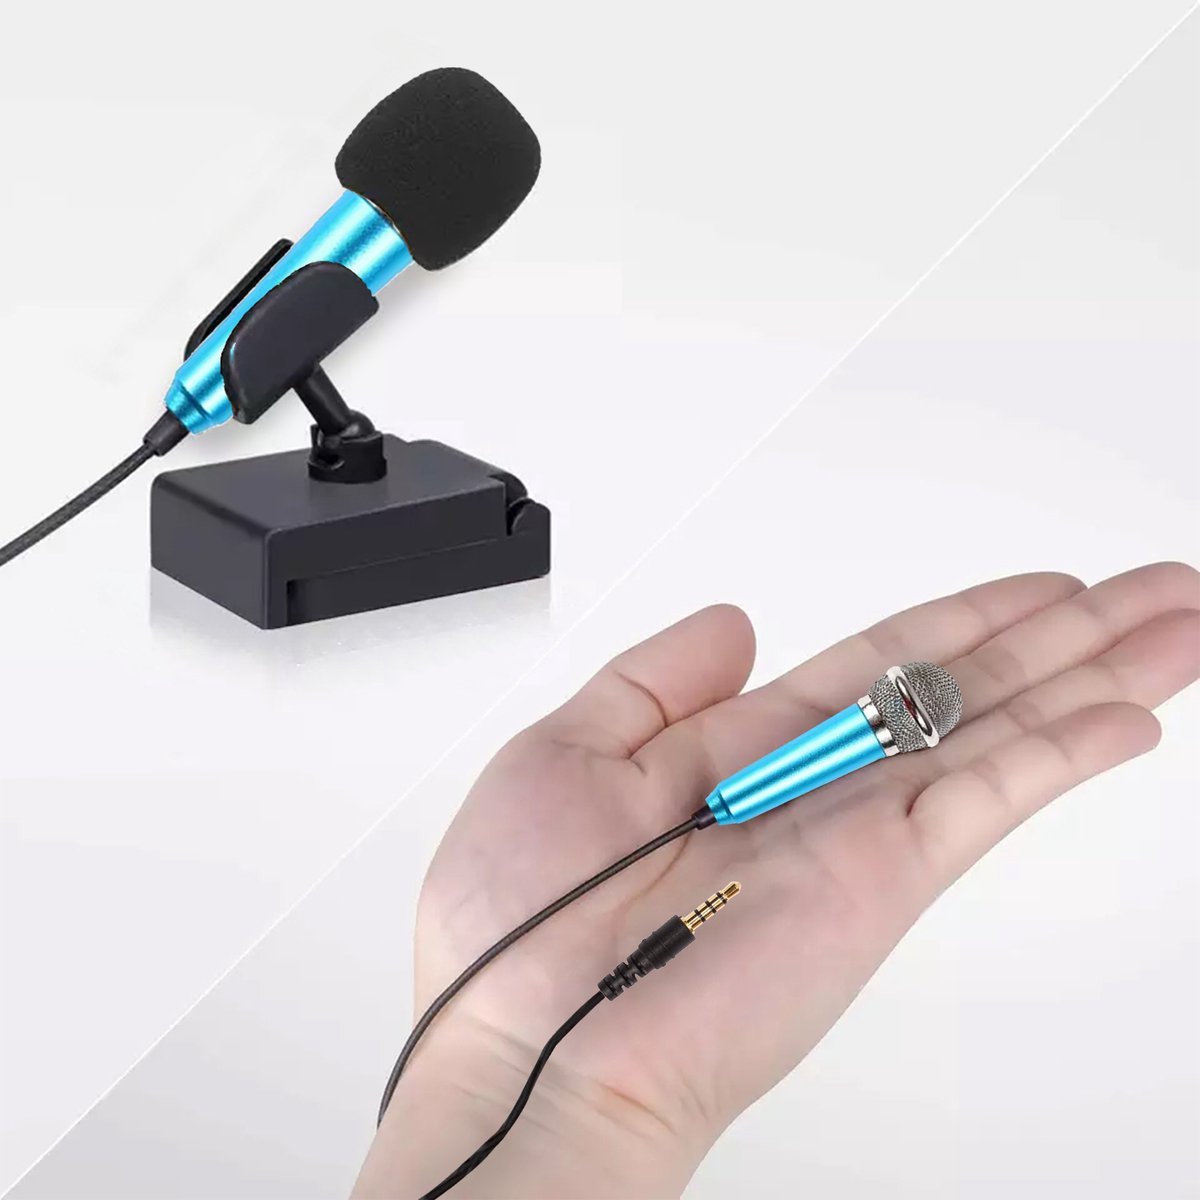 Mini Microfoon voor Telefoon - Blauw - 3.5mm - Schattig voor TikTok of Karaoke - MiniTune